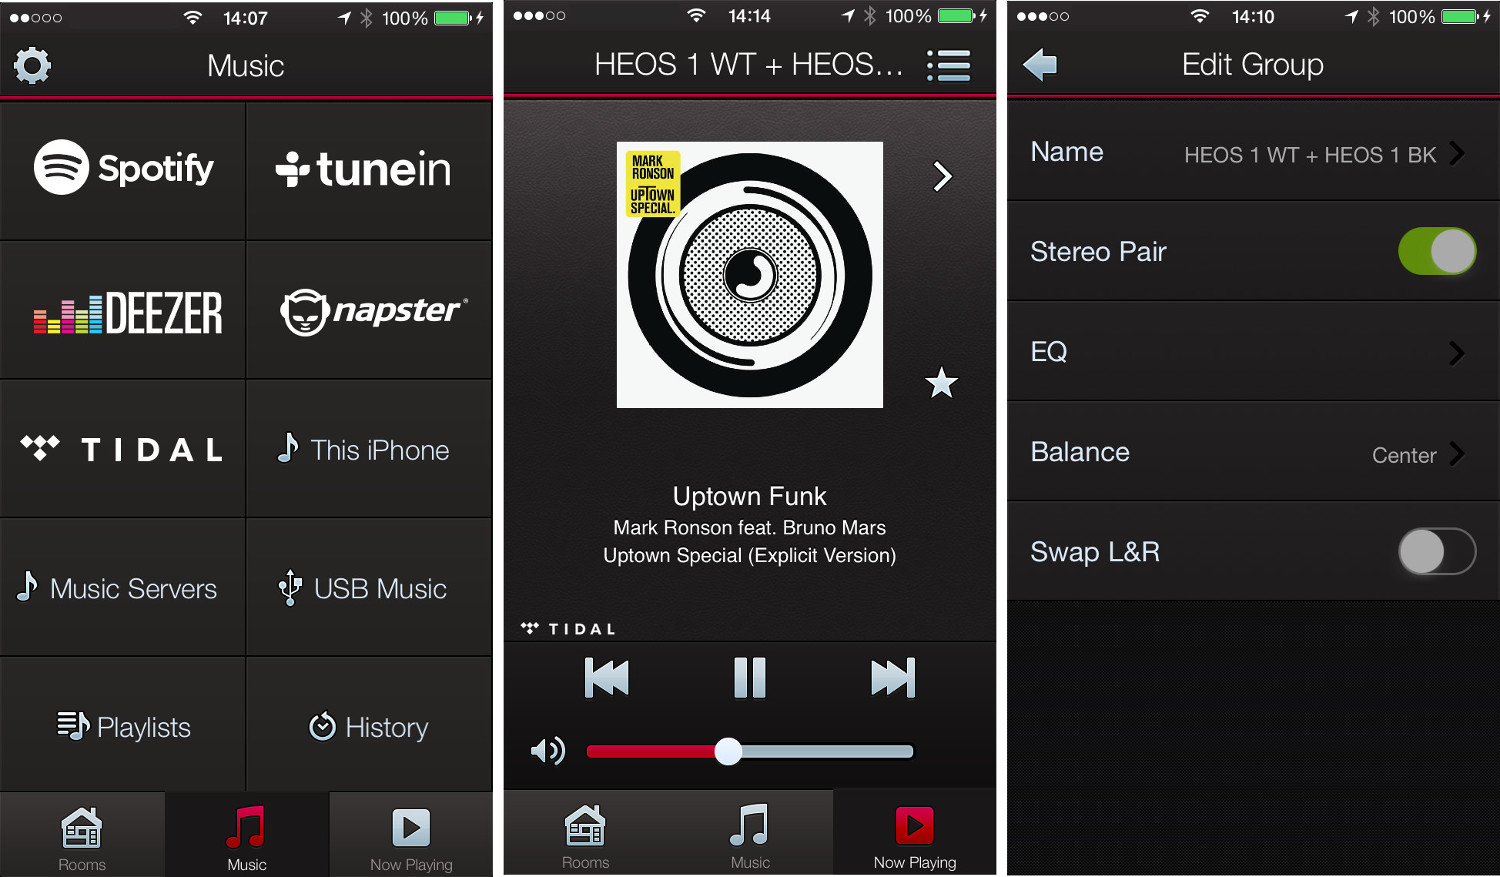 HEOS-Apps von Denon